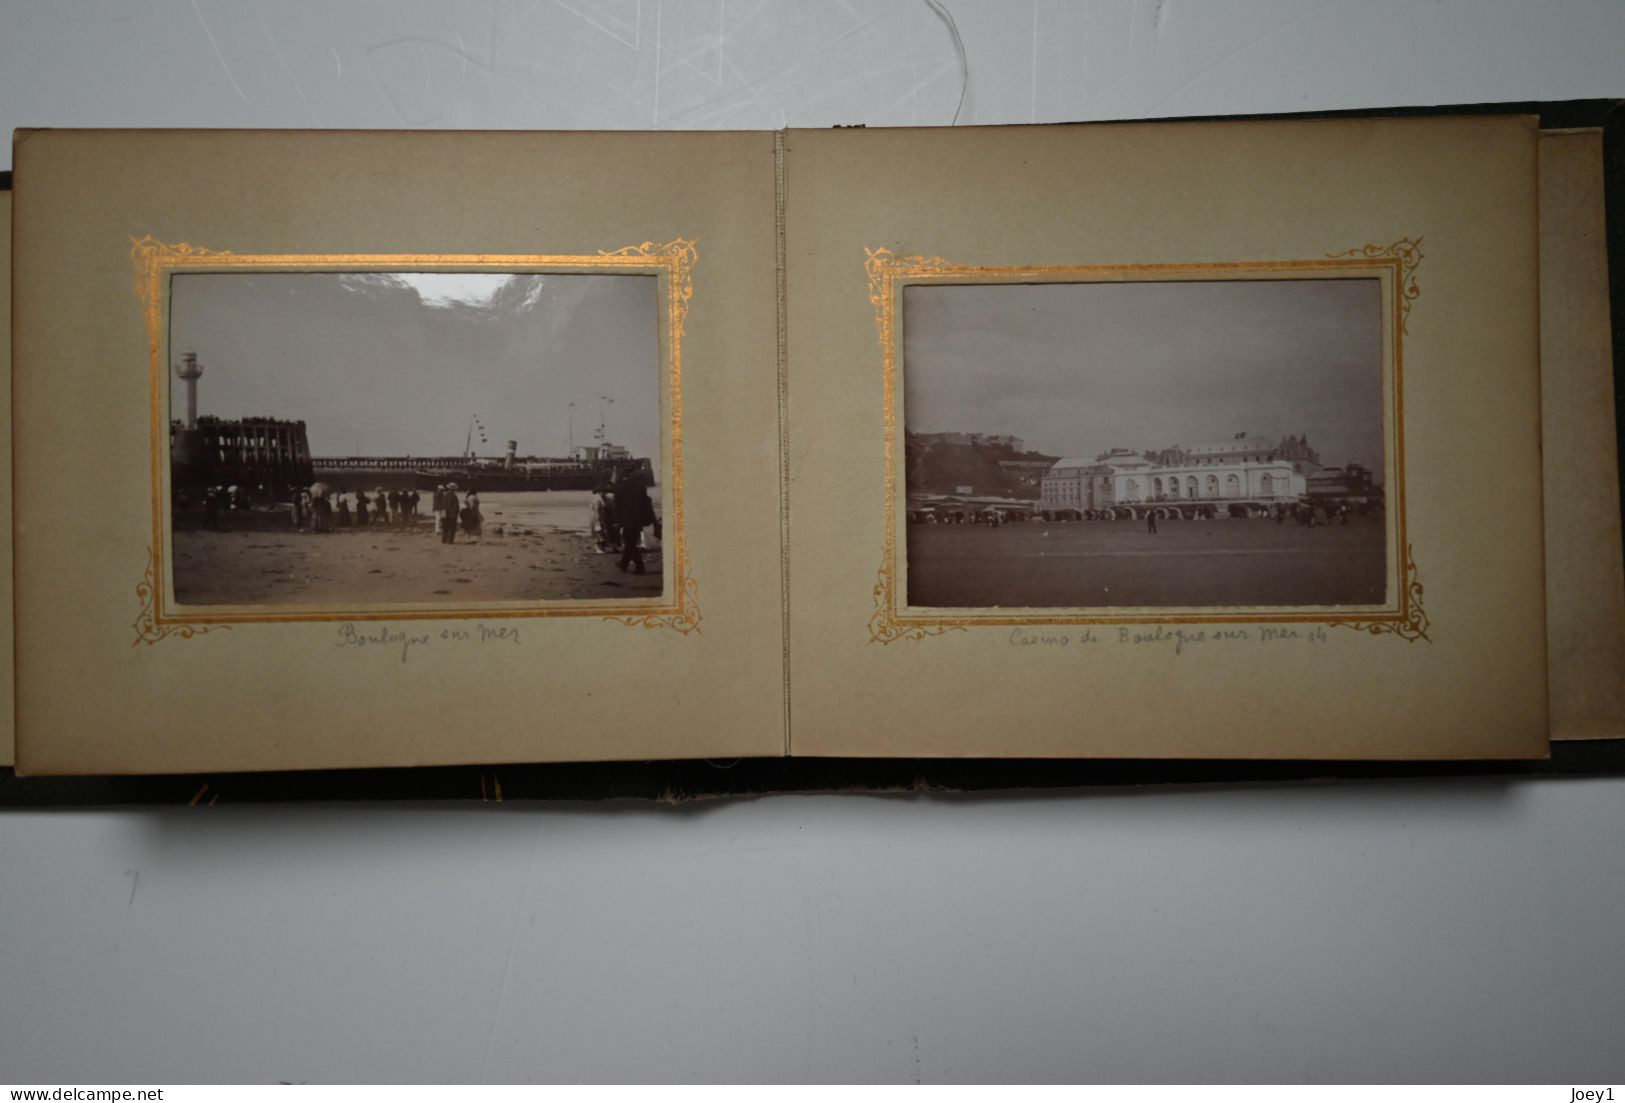 Petit Album photo Boulogne sur mer 1904